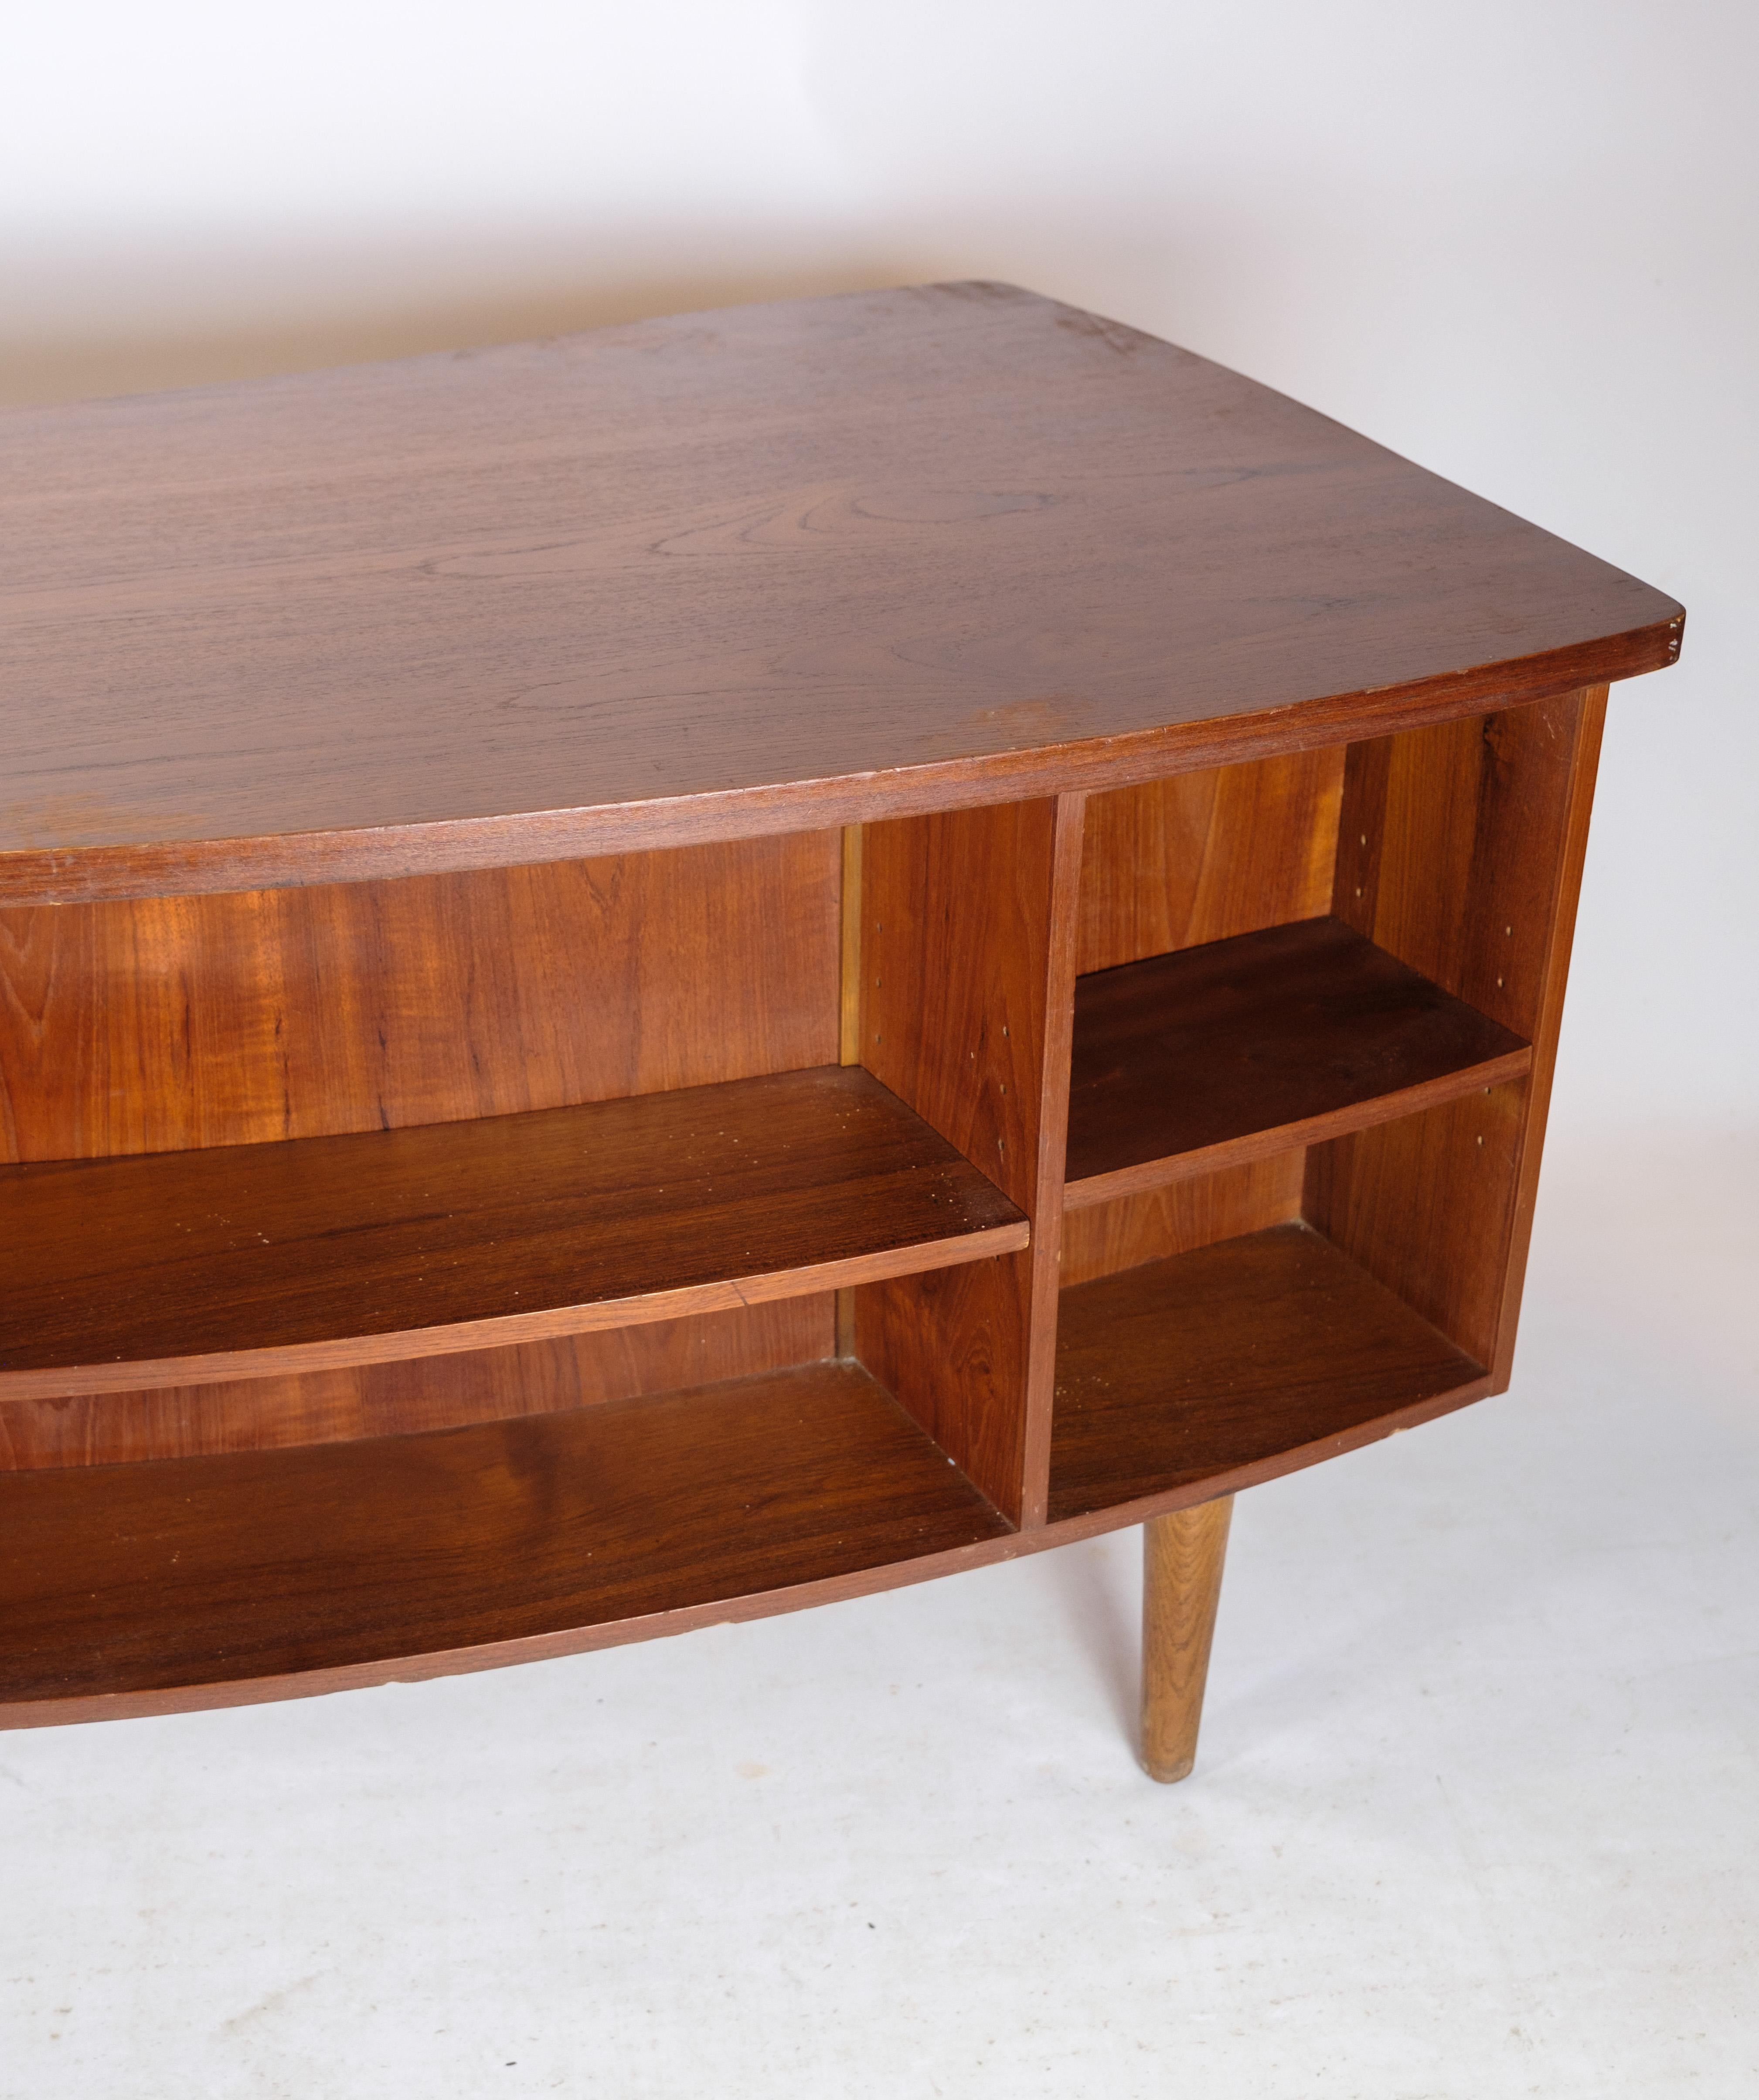 Desk in Teak wood model 54 by Kai Kristiansen and Feldballes furniture from 1954 For Sale 1